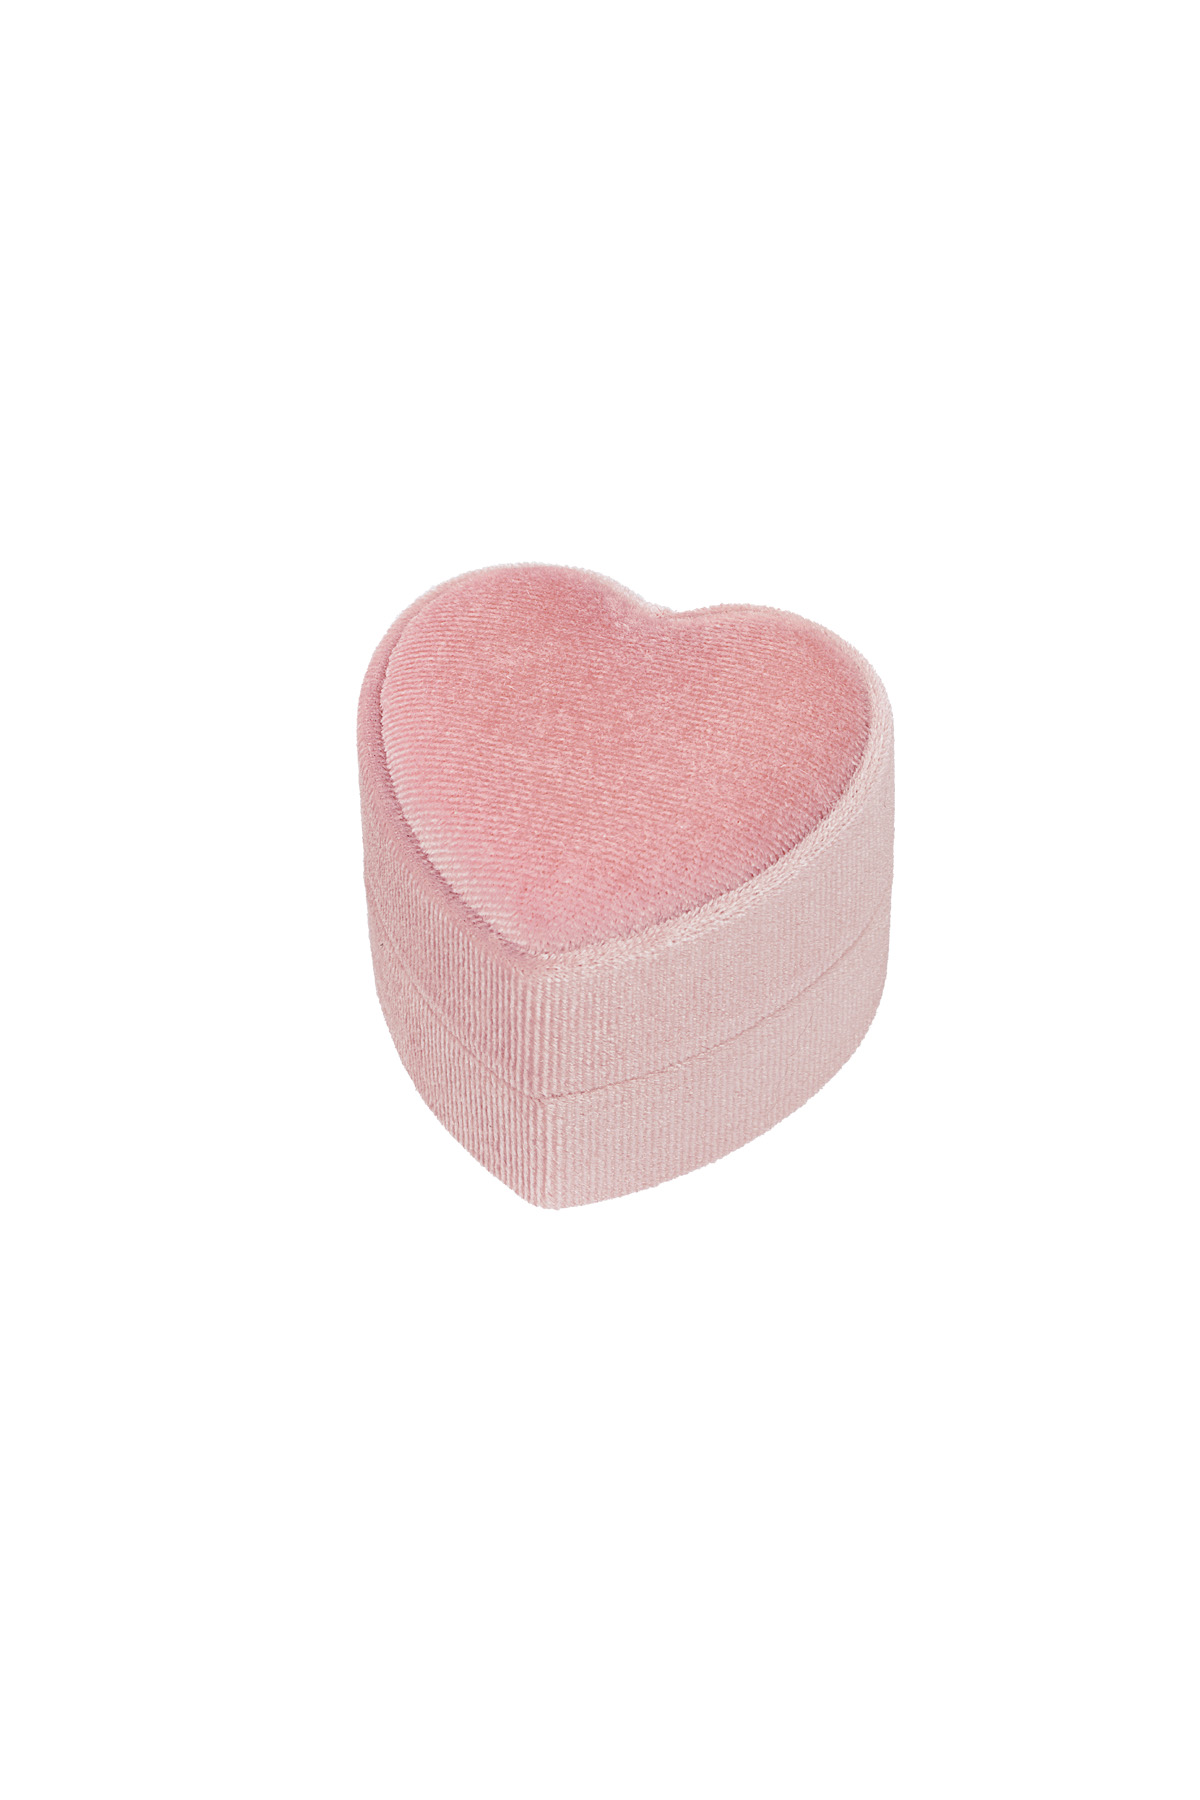 Schmuckkästchen Herz aus Samt – rosa h5 